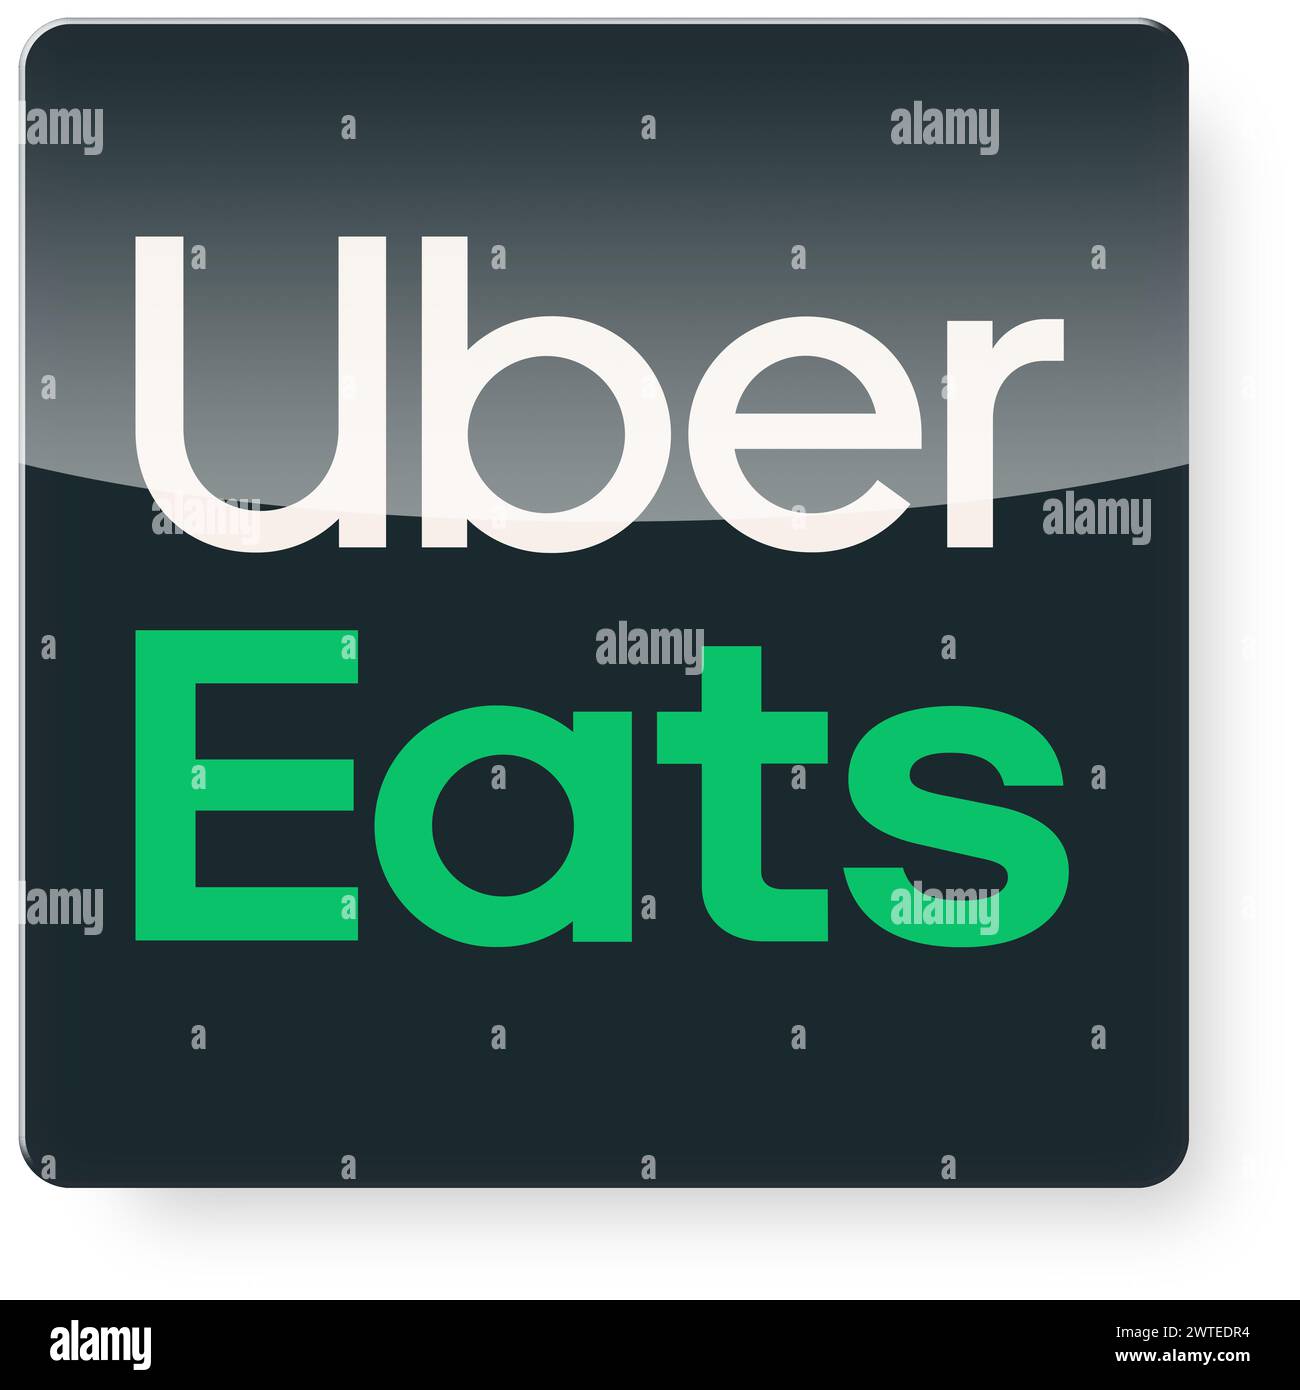 Logo Uber Eats come icona dell'app. Tracciato di ritaglio incluso. Foto Stock